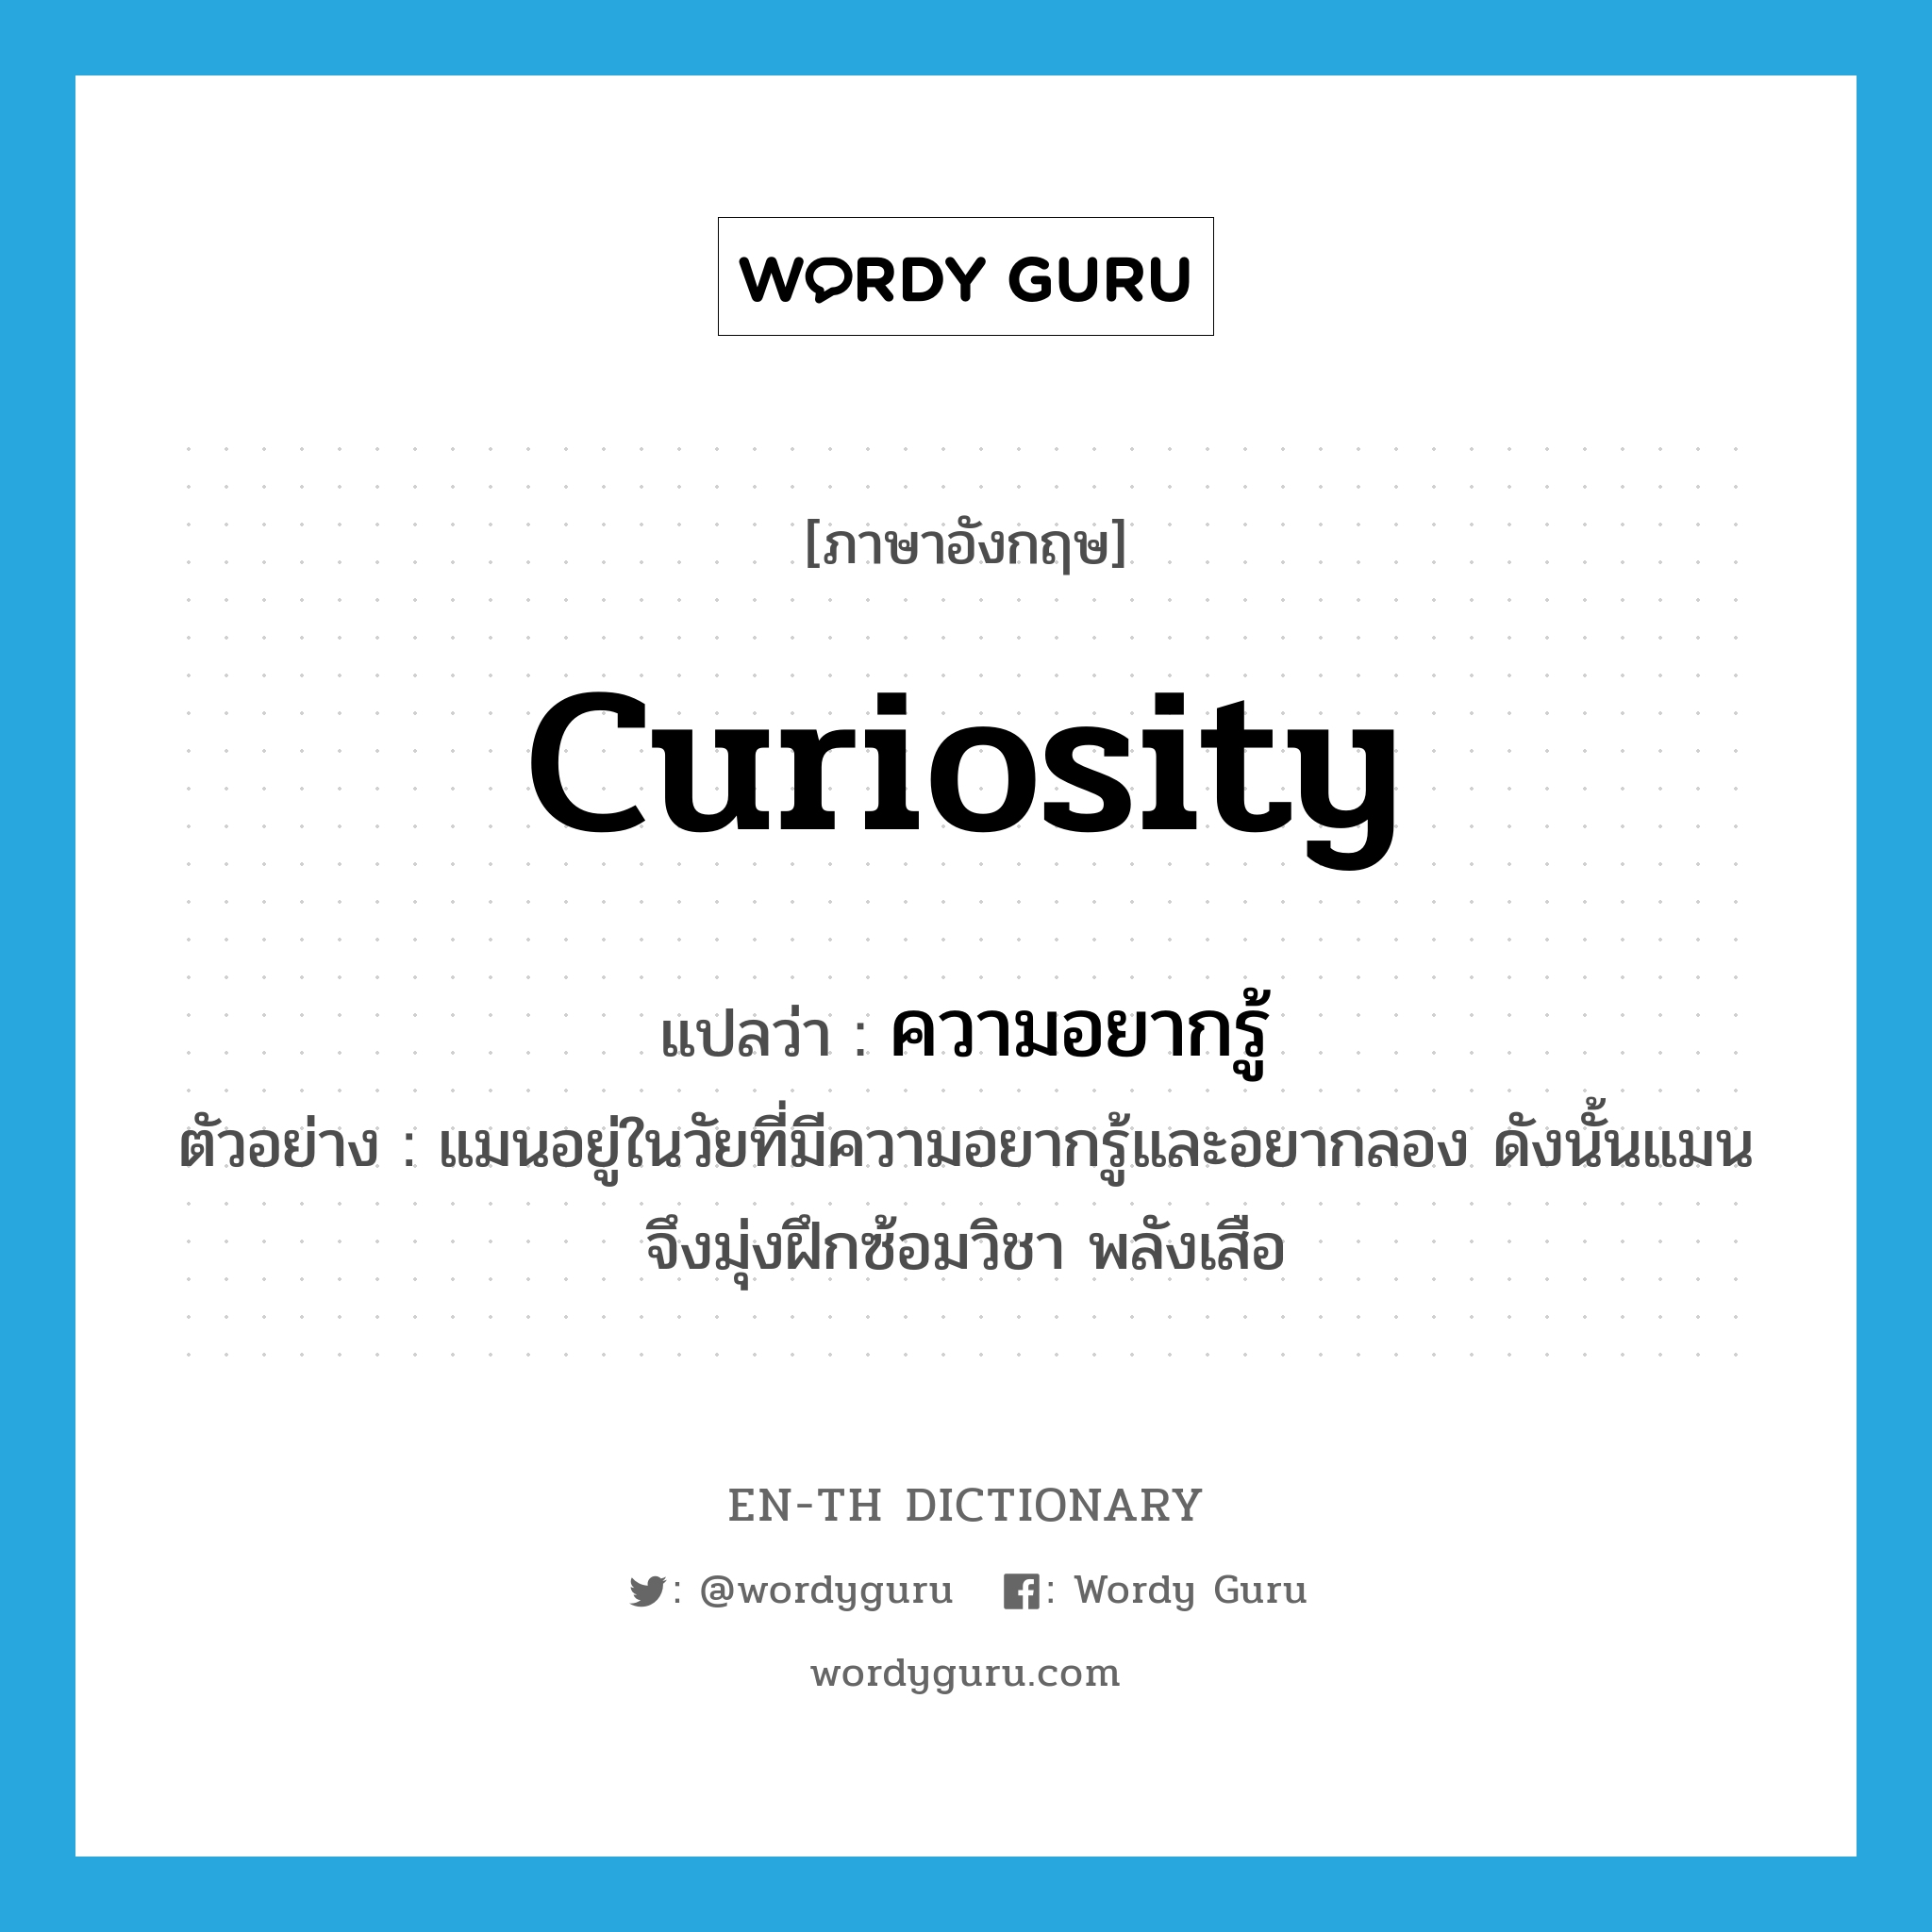 ความอยากรู้ ภาษาอังกฤษ?, คำศัพท์ภาษาอังกฤษ ความอยากรู้ แปลว่า curiosity ประเภท N ตัวอย่าง แมนอยู่ในวัยที่มีความอยากรู้และอยากลอง ดังนั้นแมนจึงมุ่งฝึกซ้อมวิชา พลังเสือ หมวด N